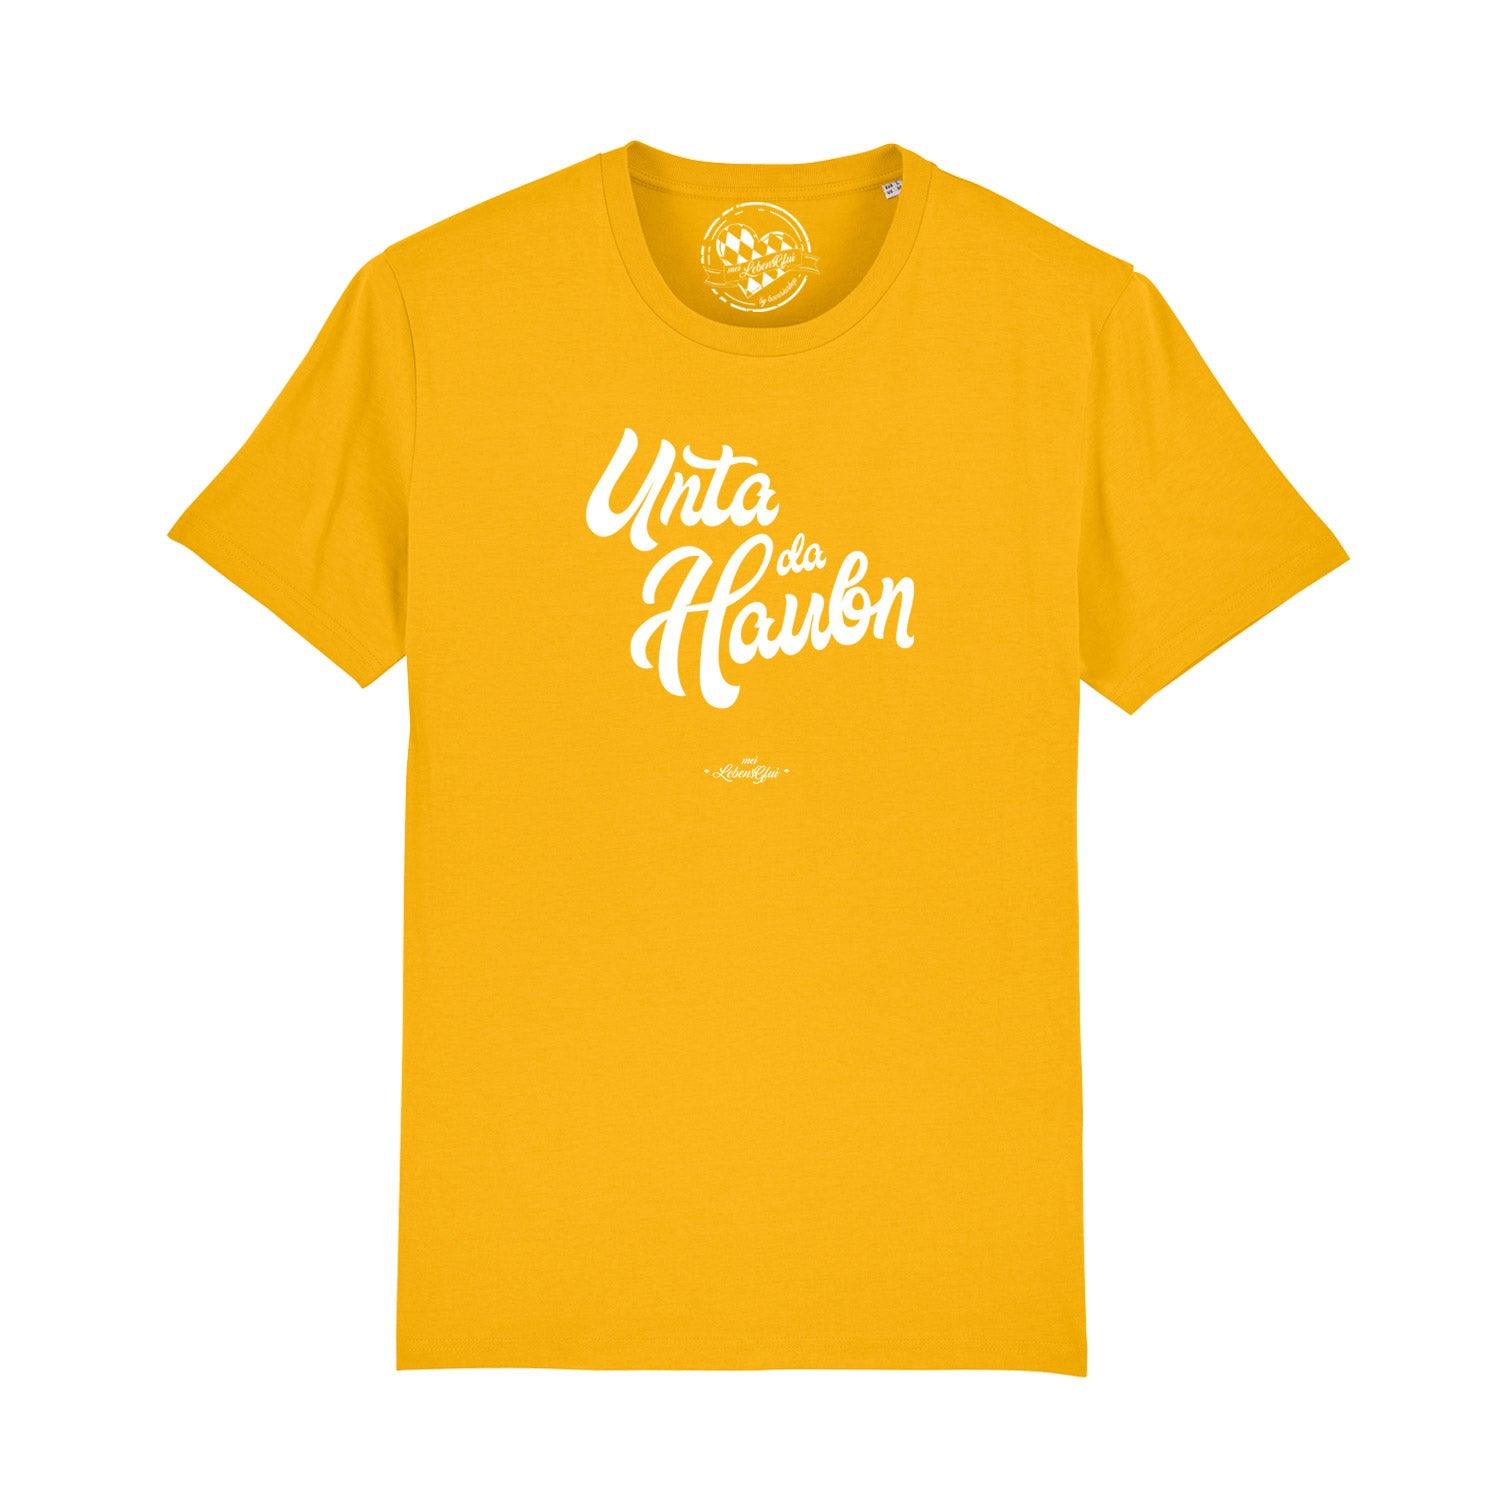 Herren T-Shirt "Unta da Haubn" - bavariashop - mei LebensGfui